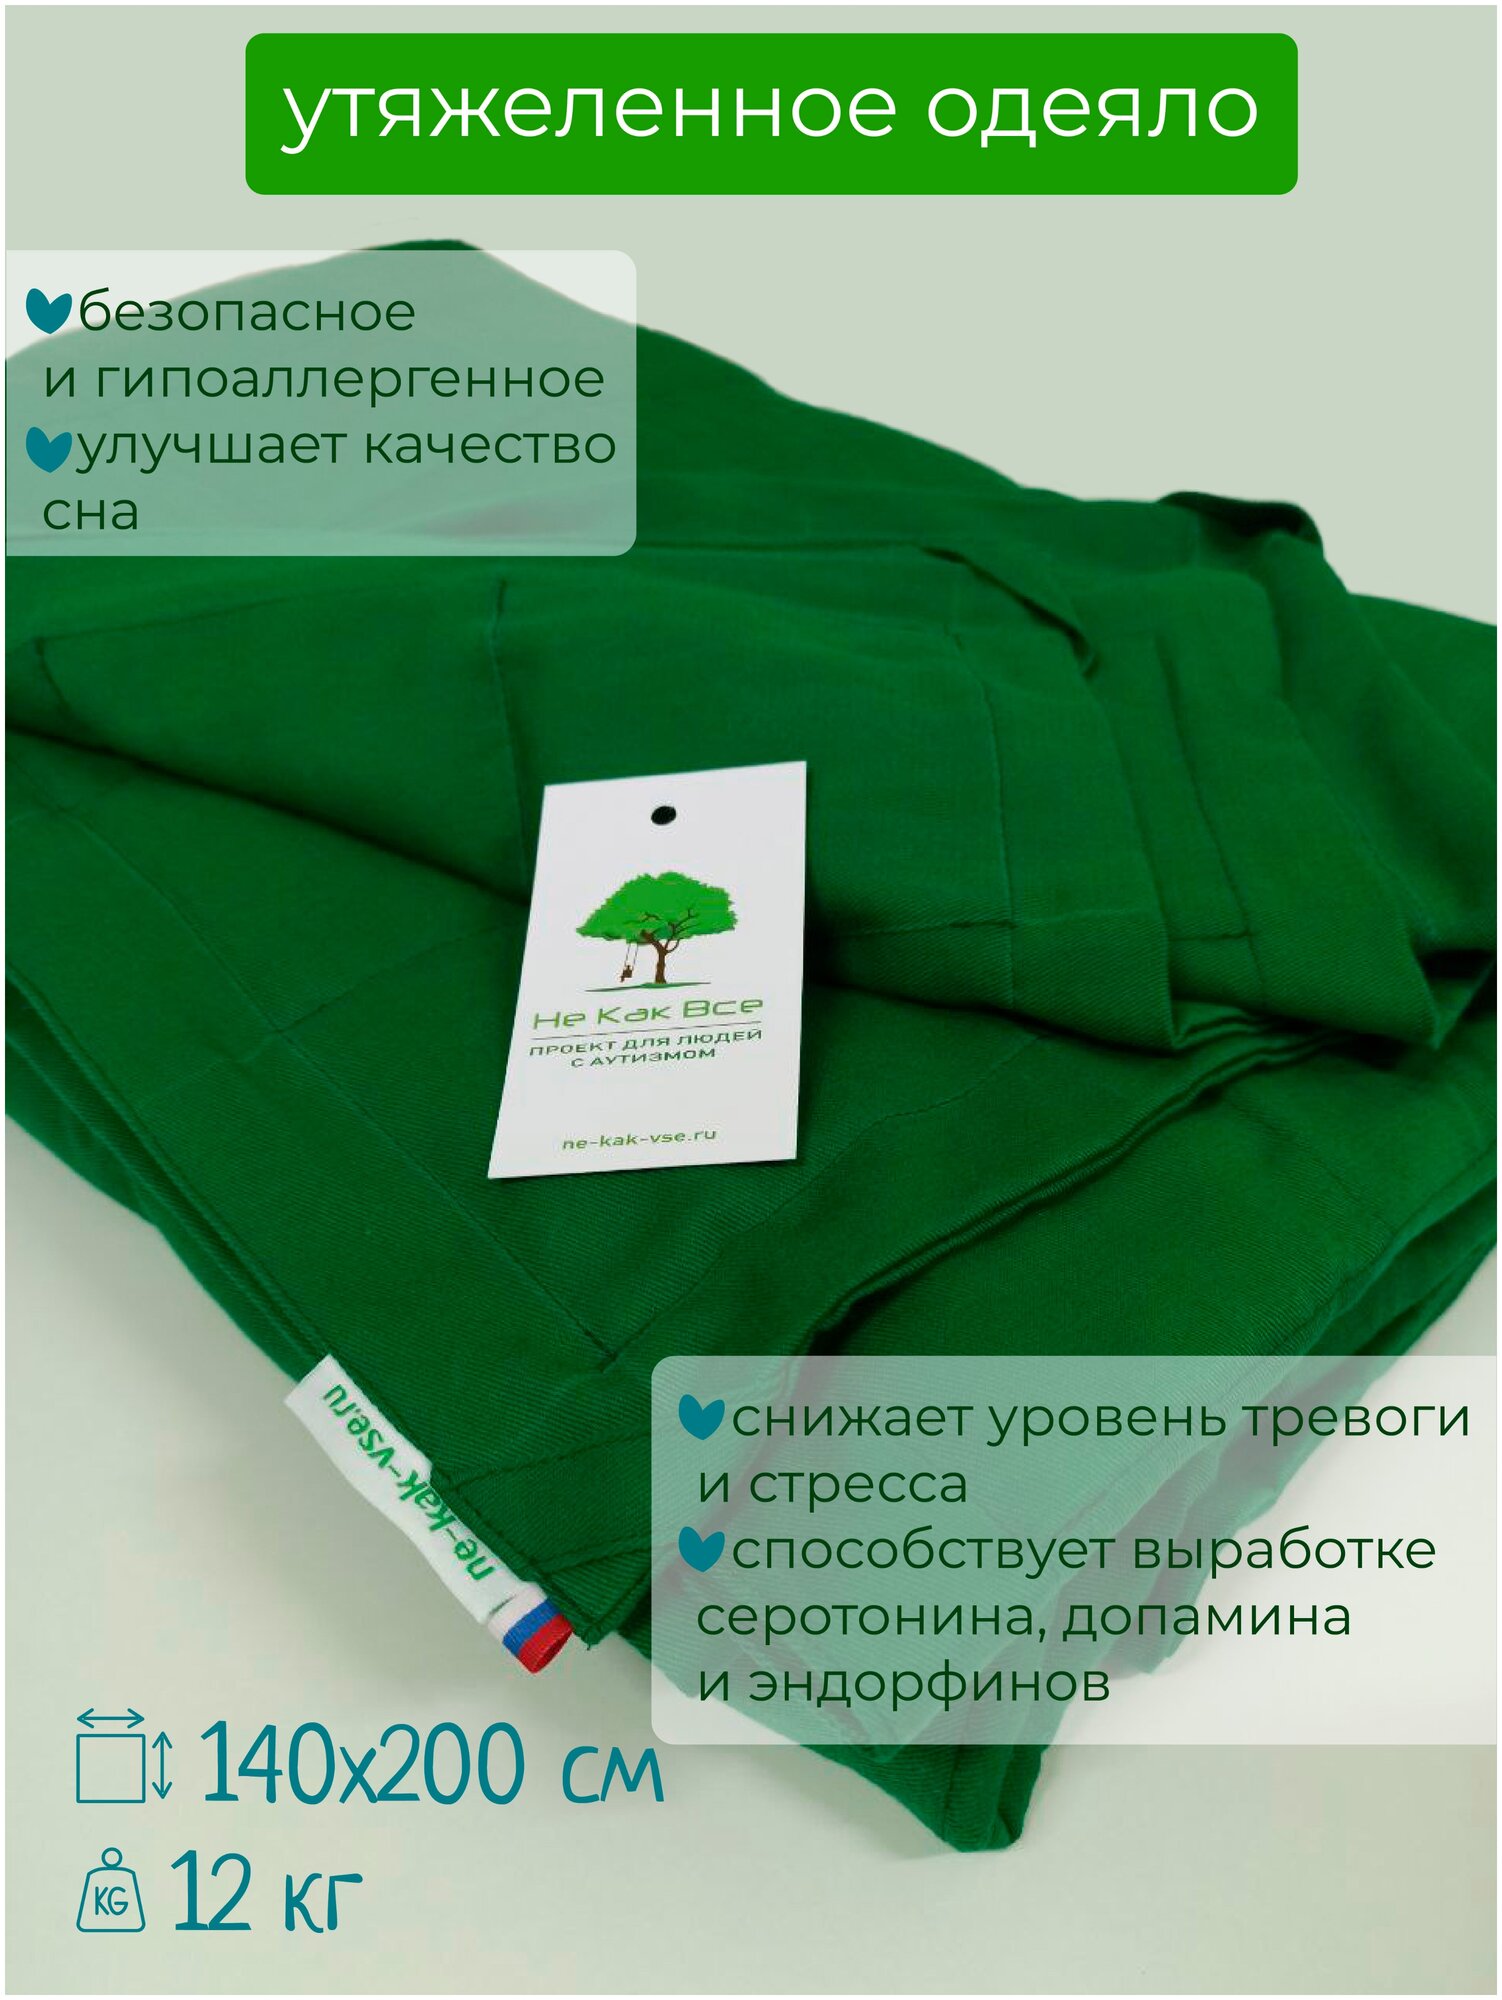 Утяжеленное одеяло "Классическое" 140х200 см, зеленое